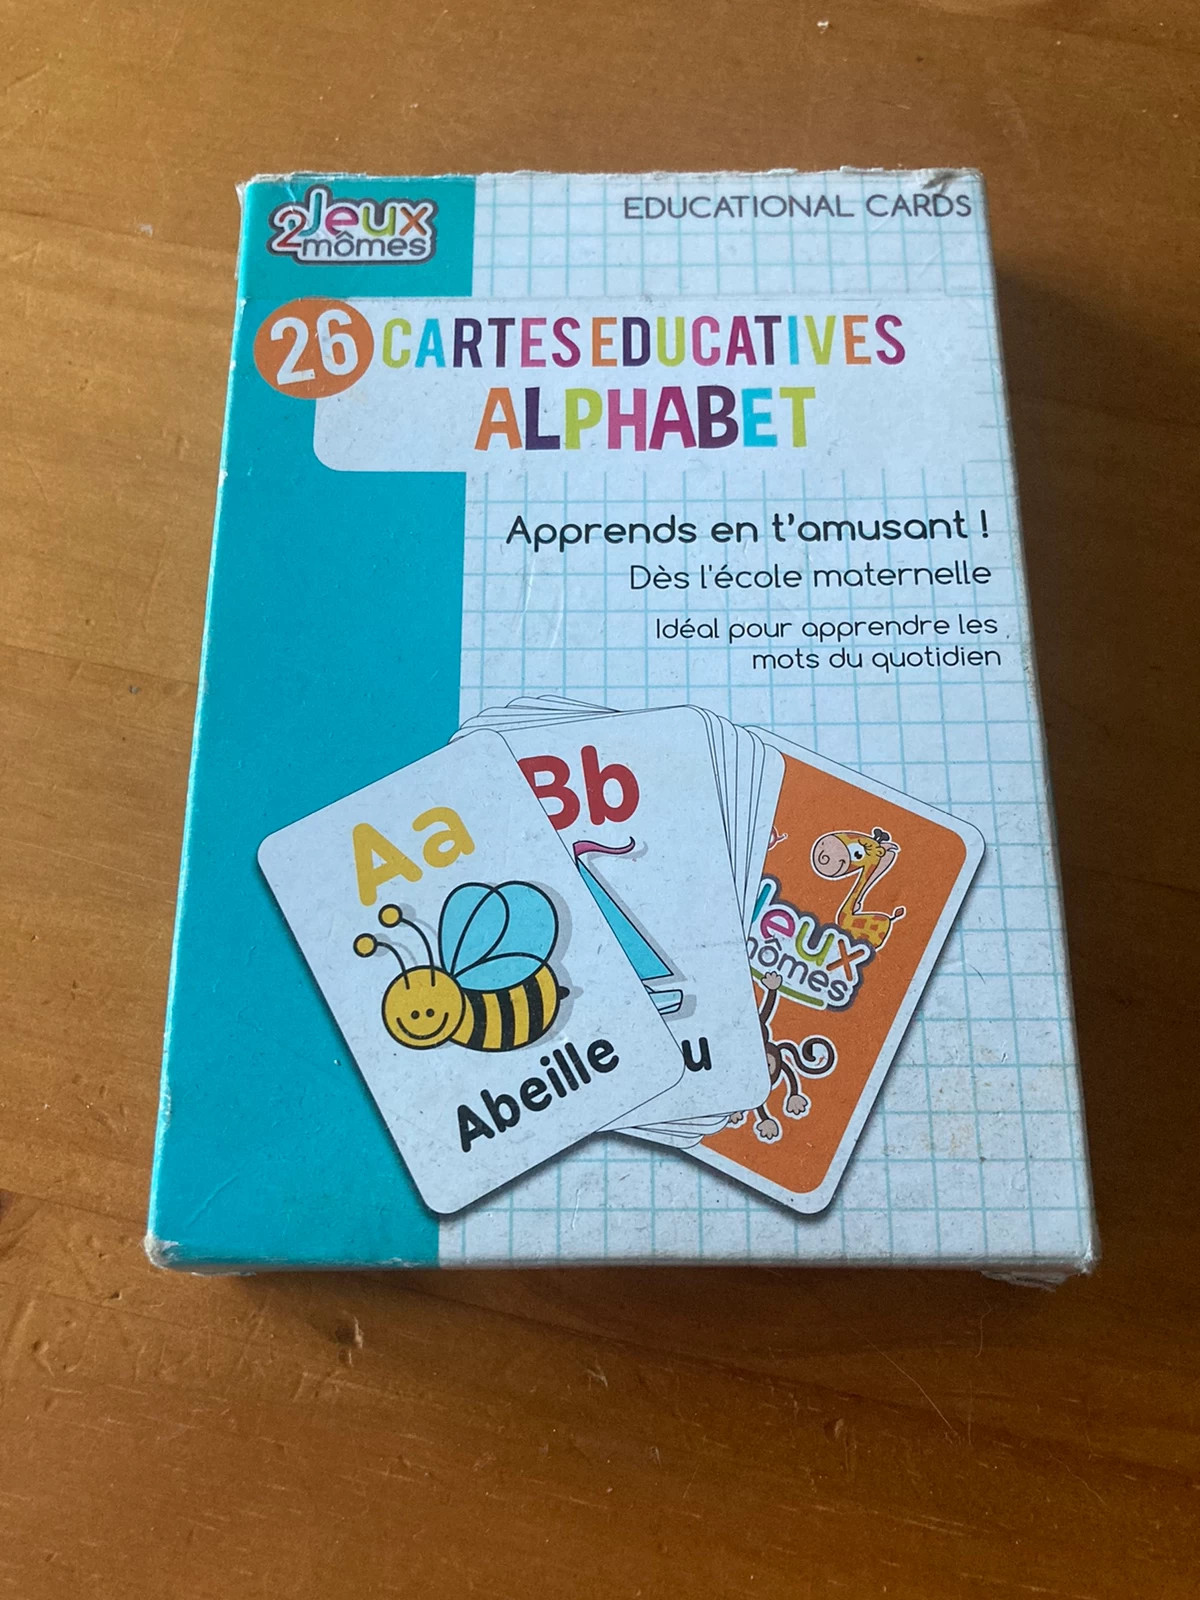 26 Cartes Éducatives Alphabet - Jeux 2 Mômes - neuf